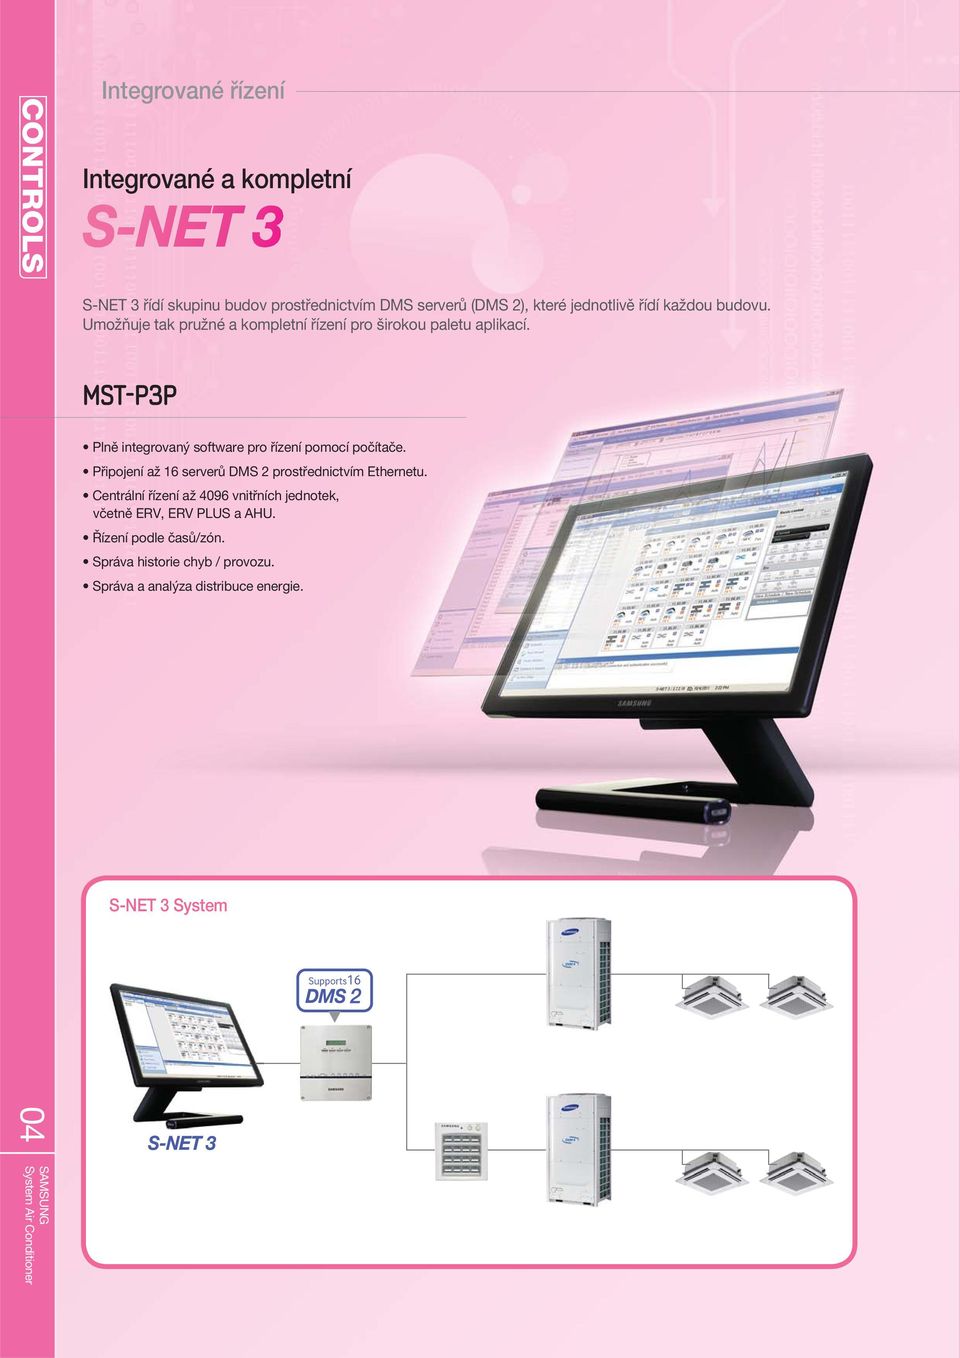 MST-P3P Plně integrovaný software pro řízení pomocí počítače. Připojení až 16 serverů DMS 2 prostřednictvím Ethernetu.